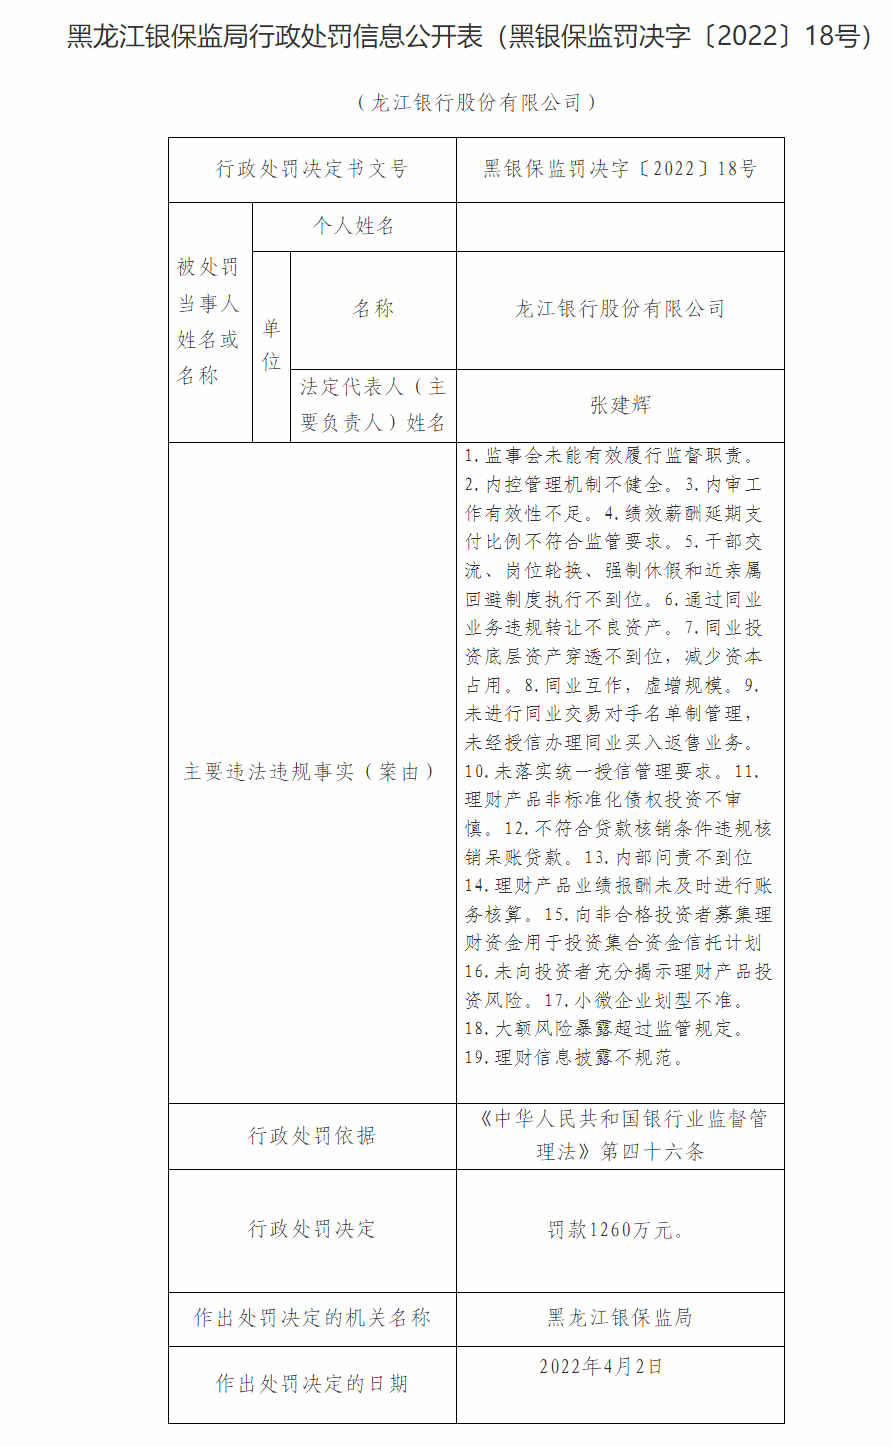 龙江银行及旗下9家分支行因内控管理机制不健全等合计被罚1730万元